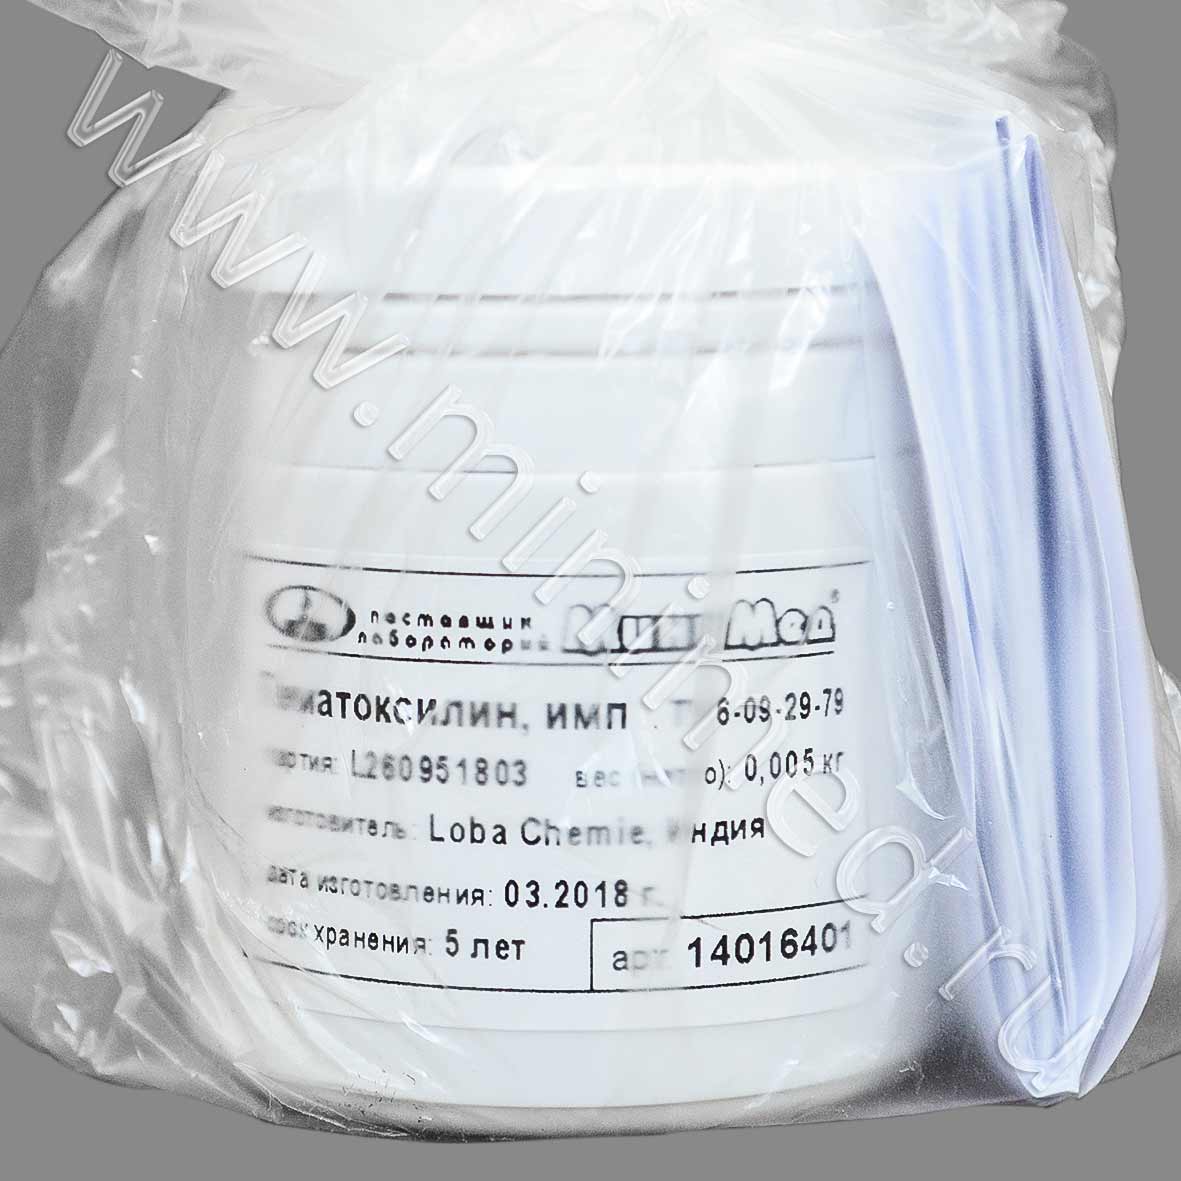 Гематоксилин, имп, 0,005 кг, Индия